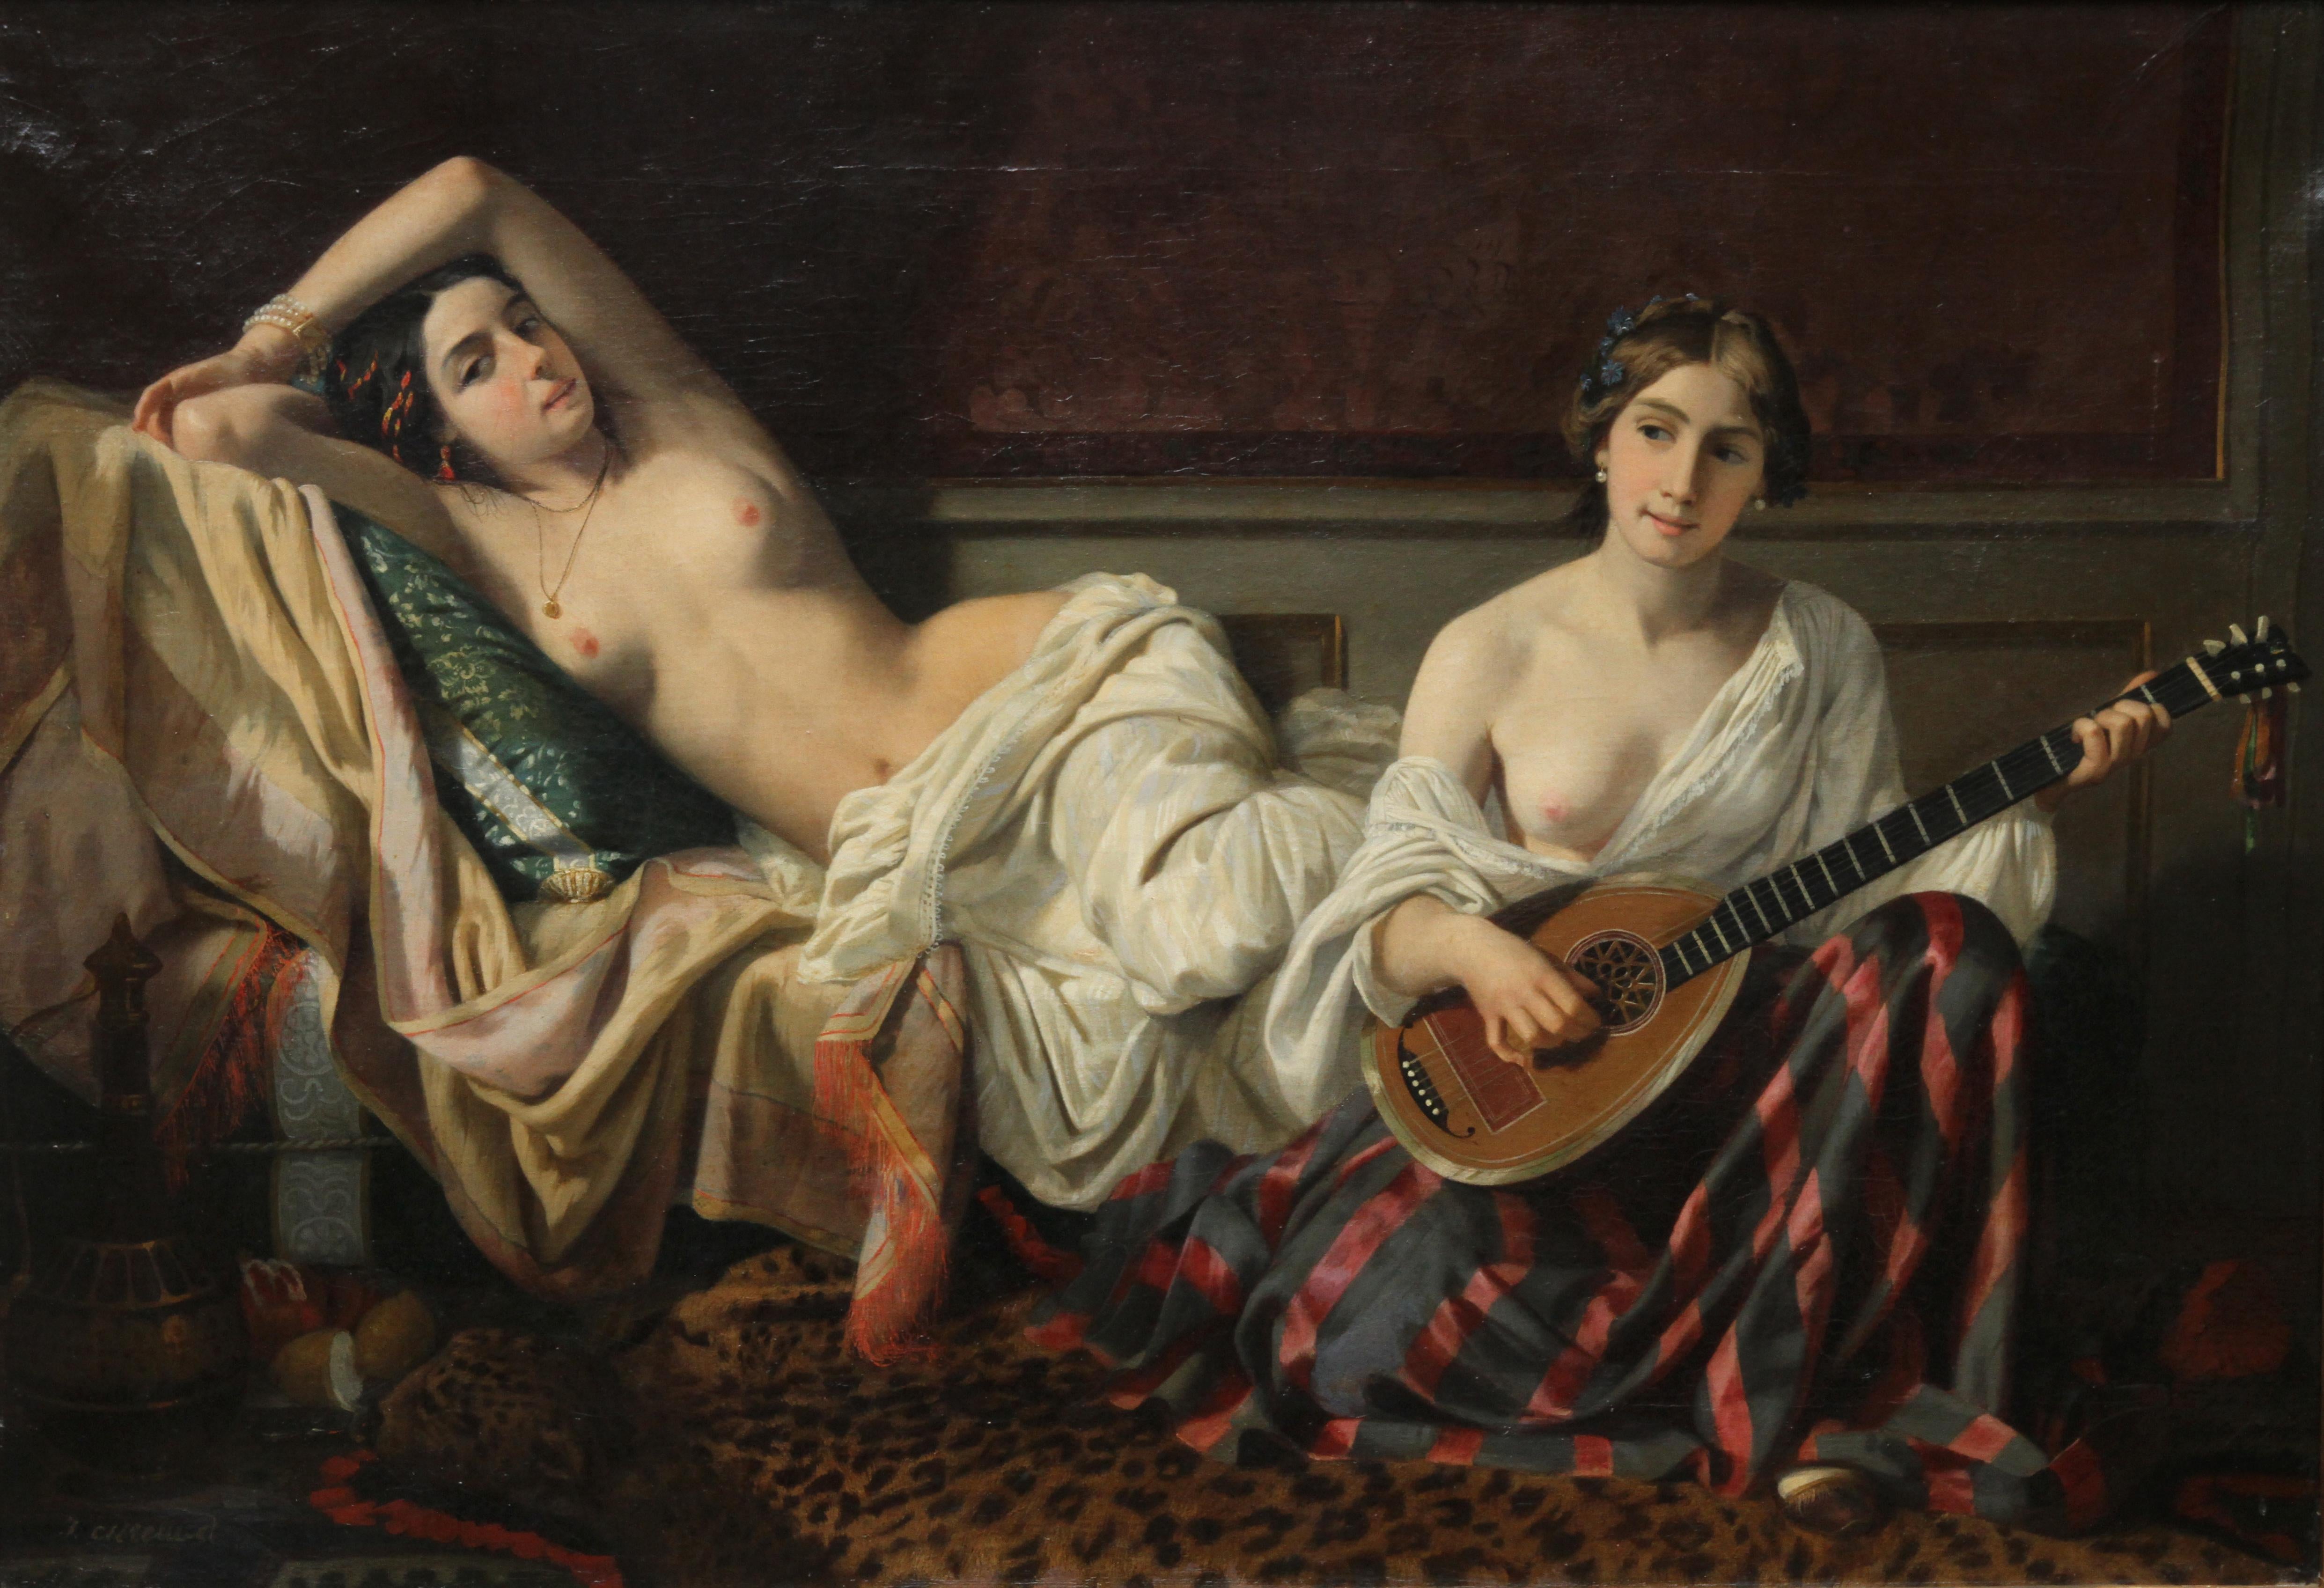 Serenade im Harem - Französisches orientalisches Akt-Ölgemälde des 19. Jahrhunderts – Painting von Joseph Caraud